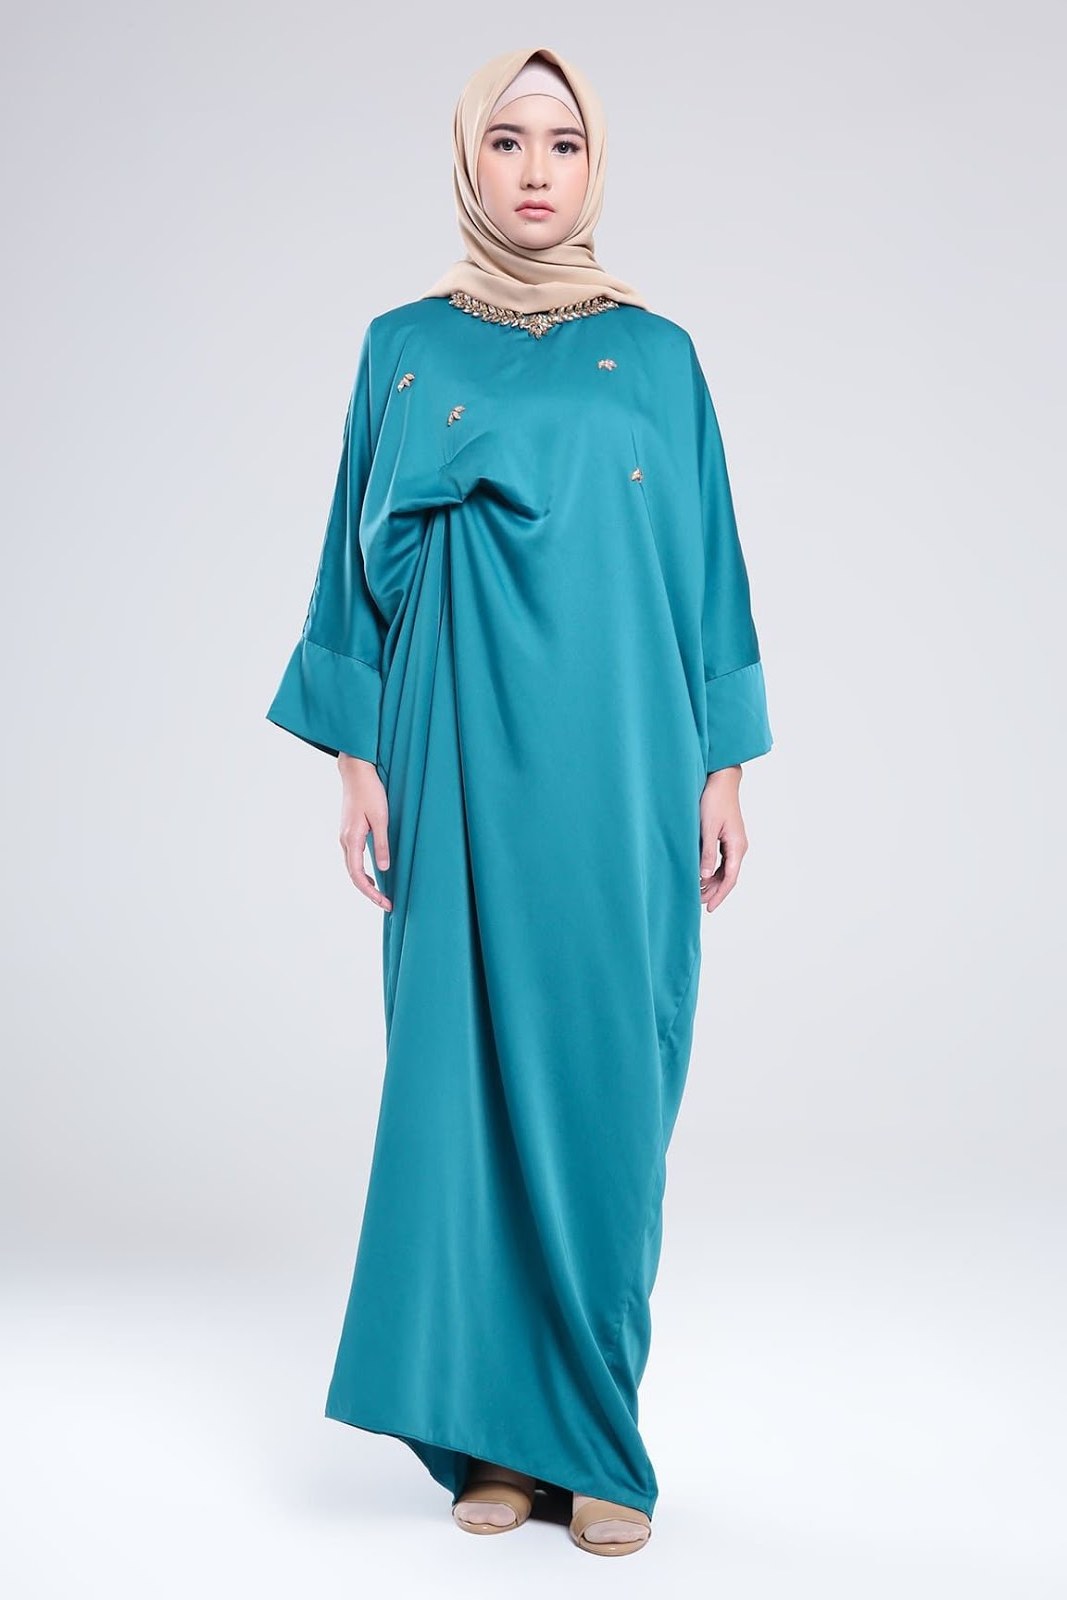 Model Baju Lebaran Perempuan 2018 Tldn Trend Baju Lebaran 2018 Menurut Desainer Ternama Indonesia